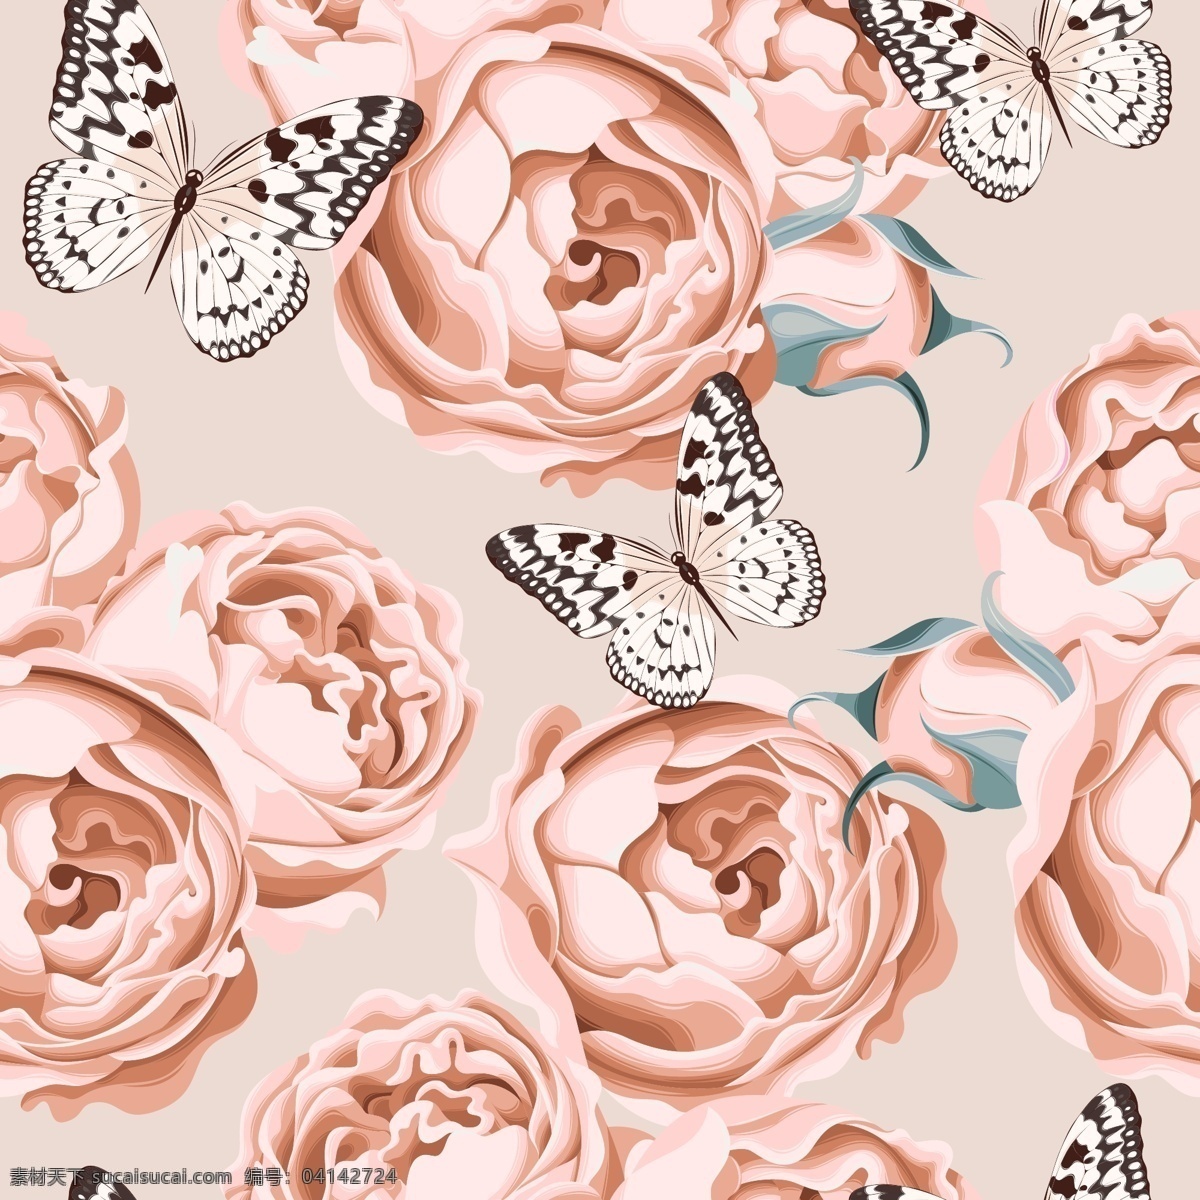 唯美 粉色 时尚 玫瑰花 背景 底纹 蝴蝶 花朵 花卉